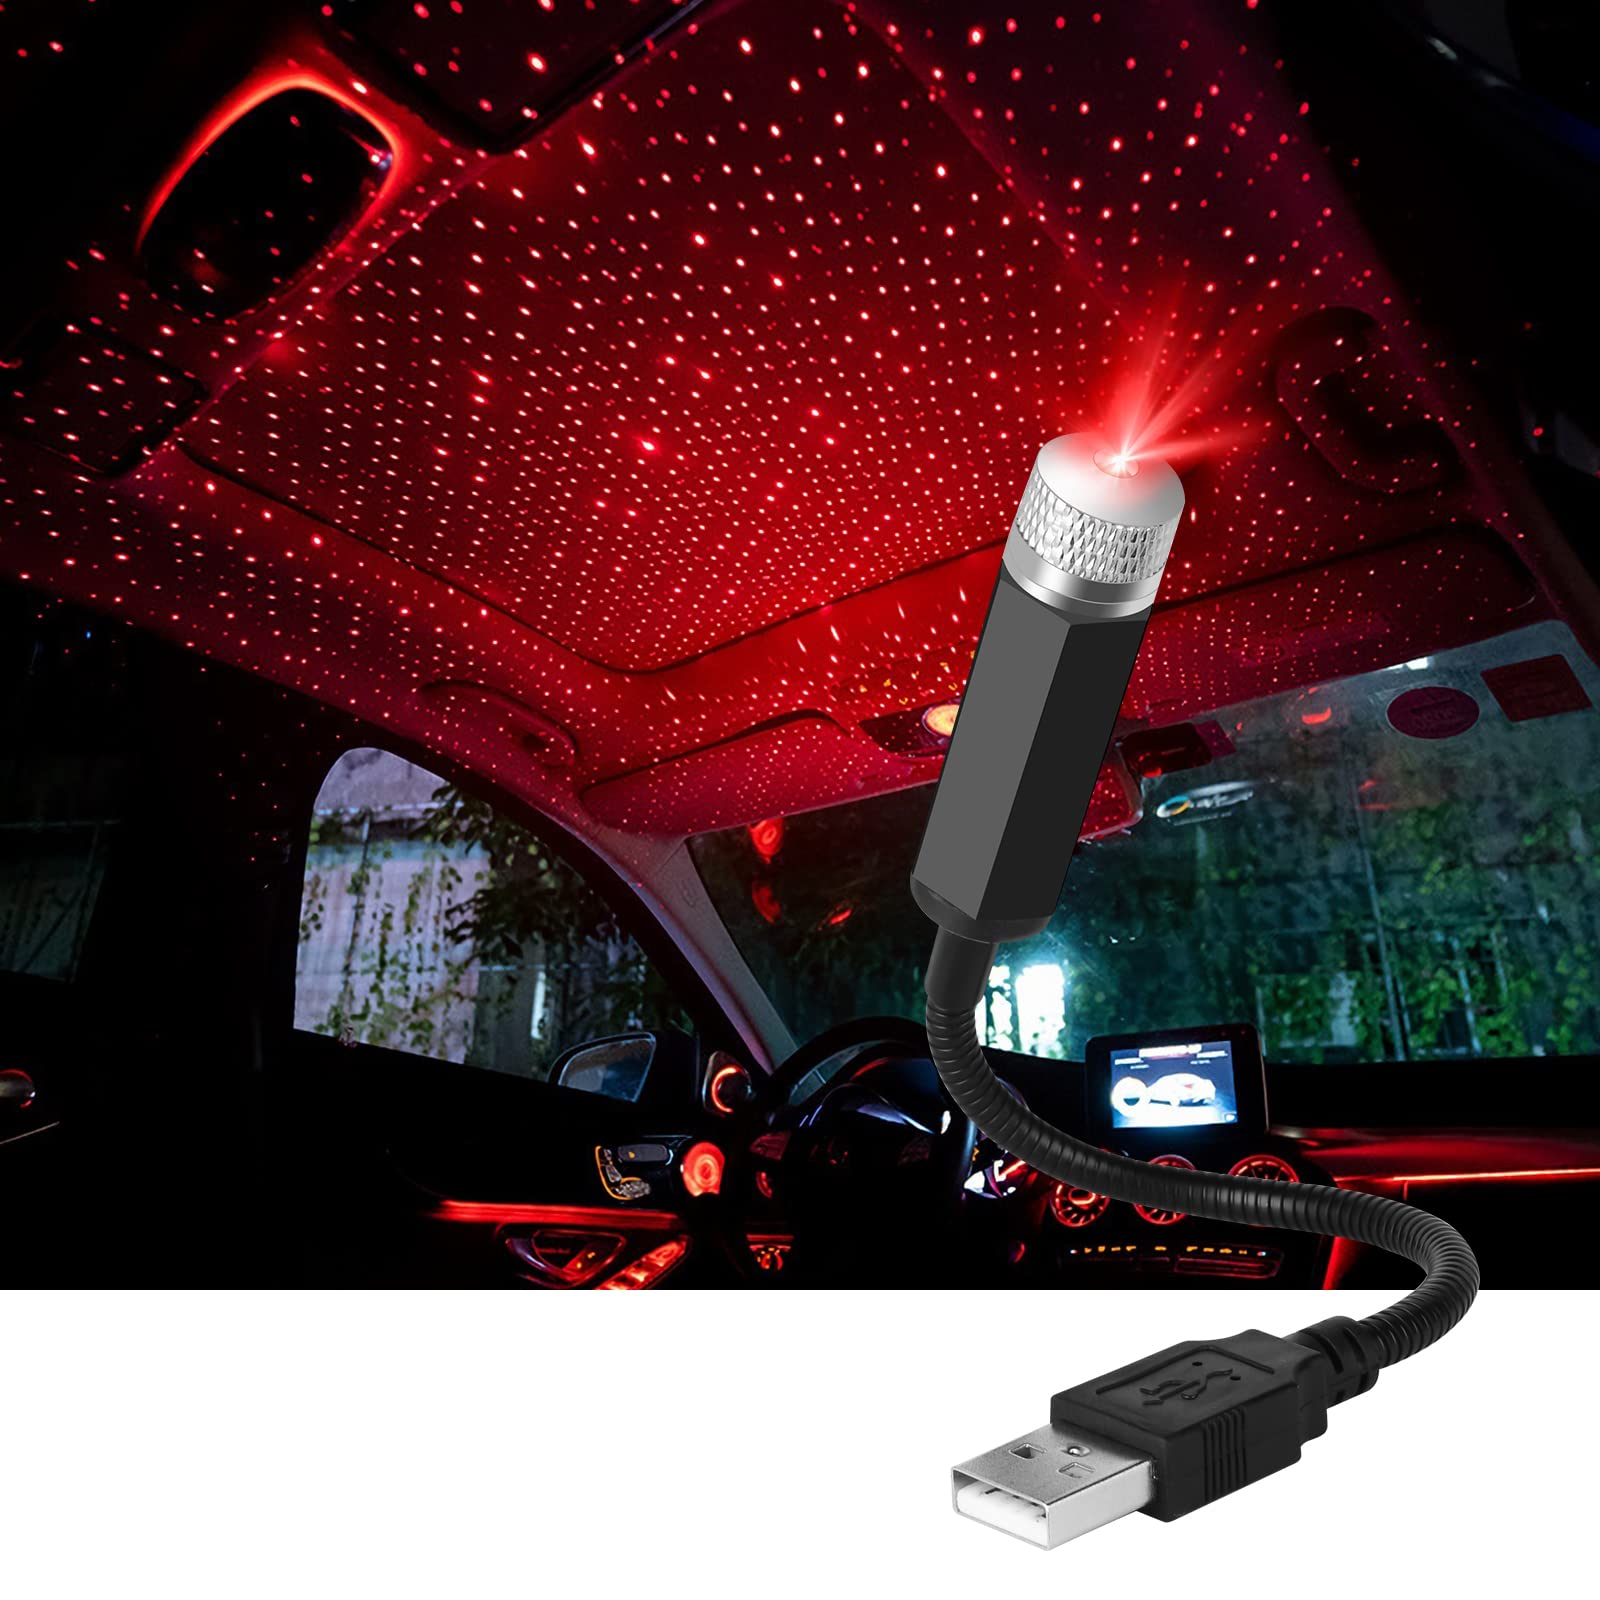 URAQT LED Auto Decke Starlight,Einstellbar Auto Innen Atmosphäre Licht Mehrere Modi Plug and Play USB Mini Auto Decke Starlight Projection LED-Licht Universal für Auto Zuhause Party (Rot) von URAQT